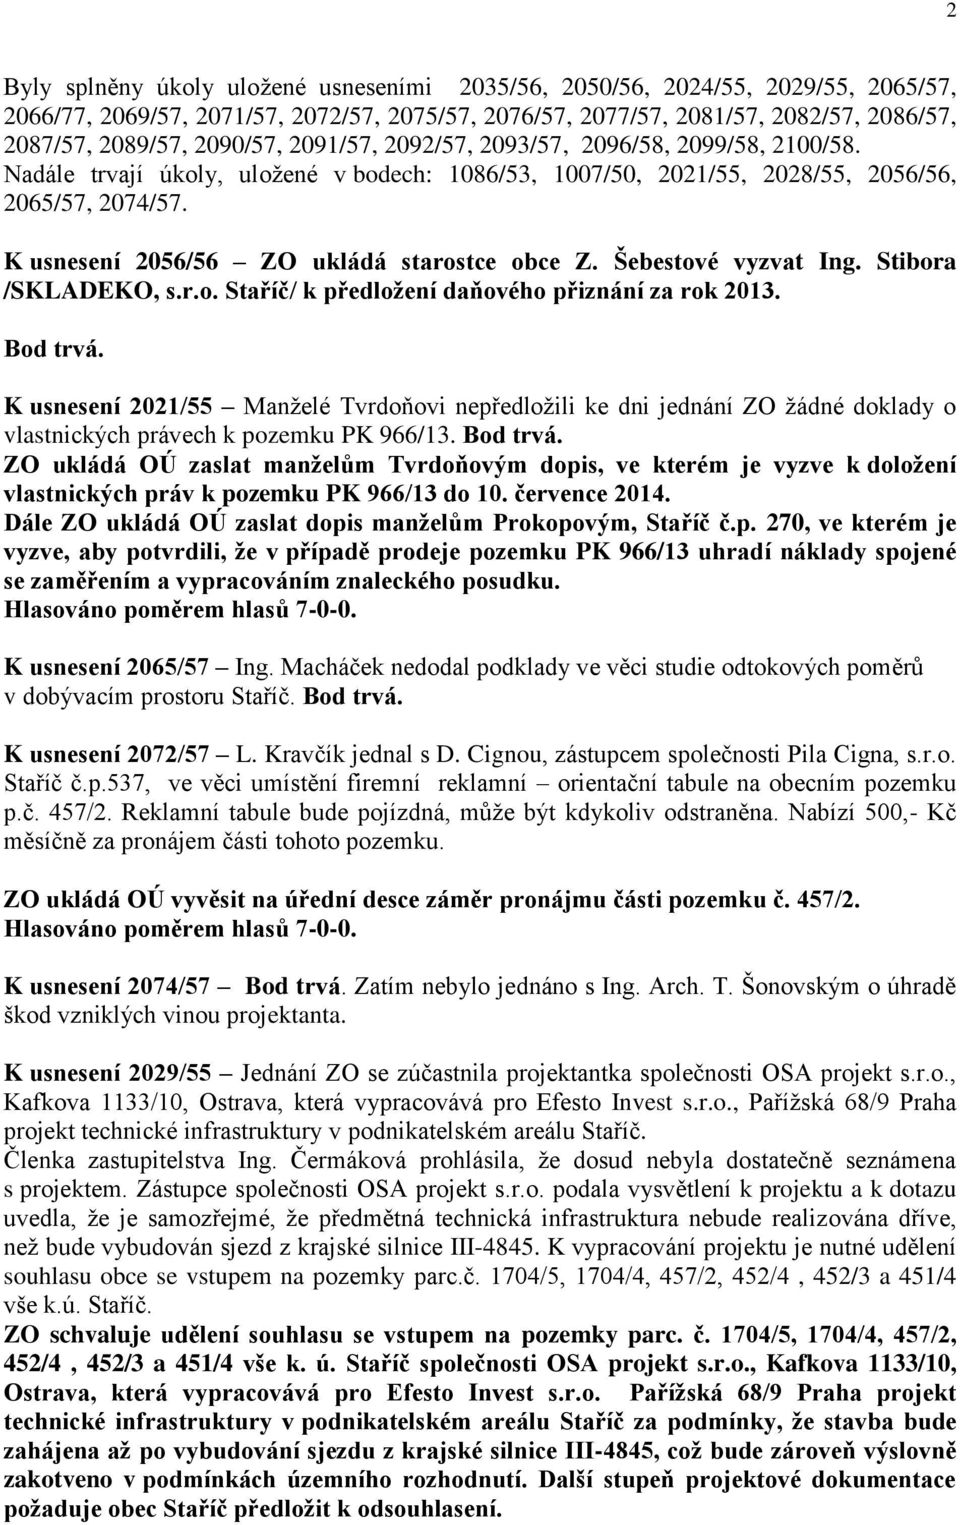 K usnesení 2056/56 ZO ukládá starostce obce Z. Šebestové vyzvat Ing. Stibora /SKLADEKO, s.r.o. Staříč/ k předložení daňového přiznání za rok 2013. Bod trvá.